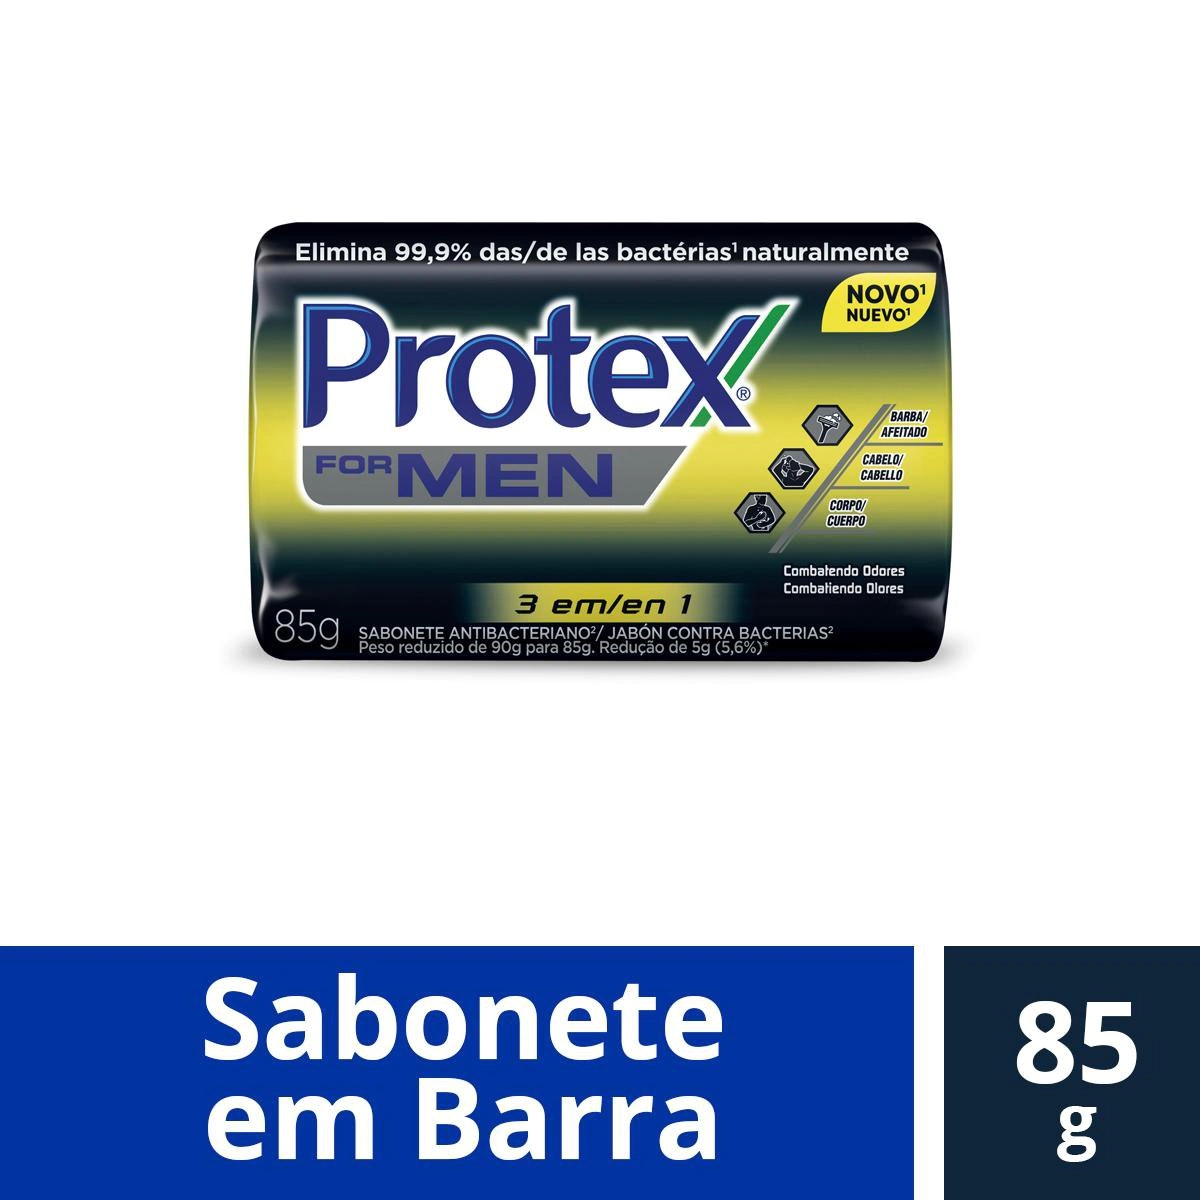 Sabonete Antibacteriano Protex For Men 3 Em 1 85g